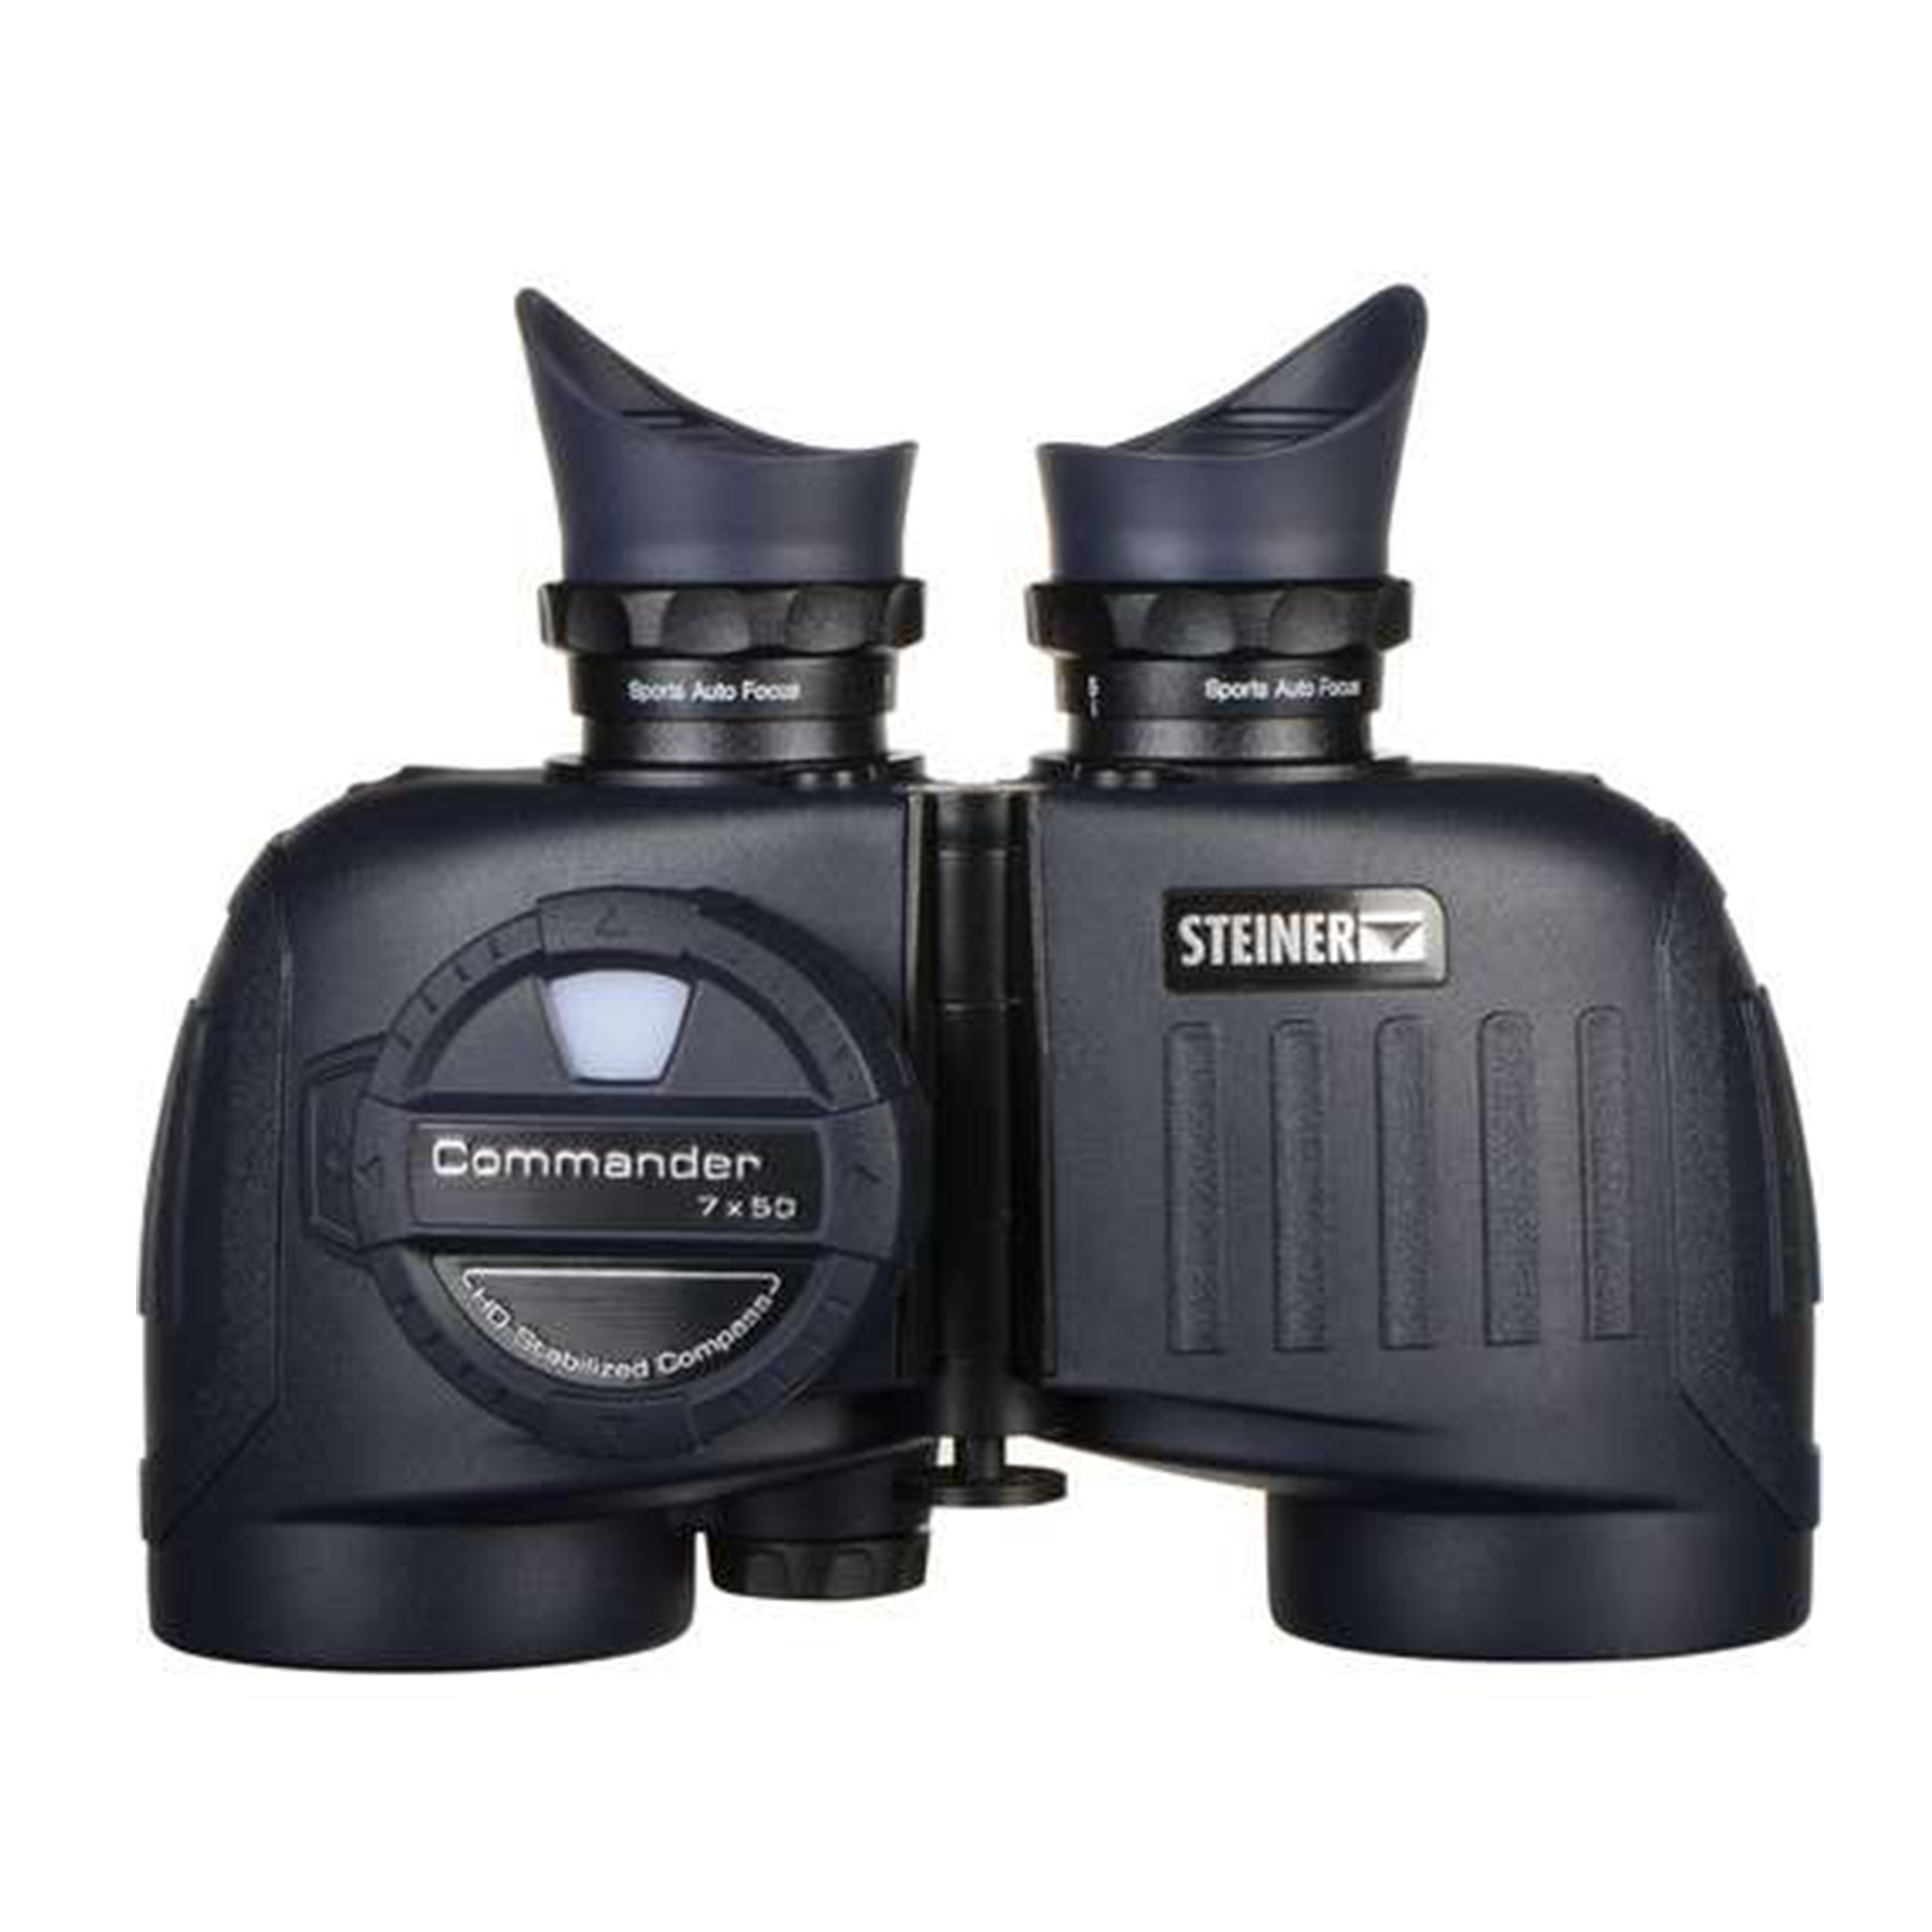 Steiner 7x50 Commander Binocular With Compass